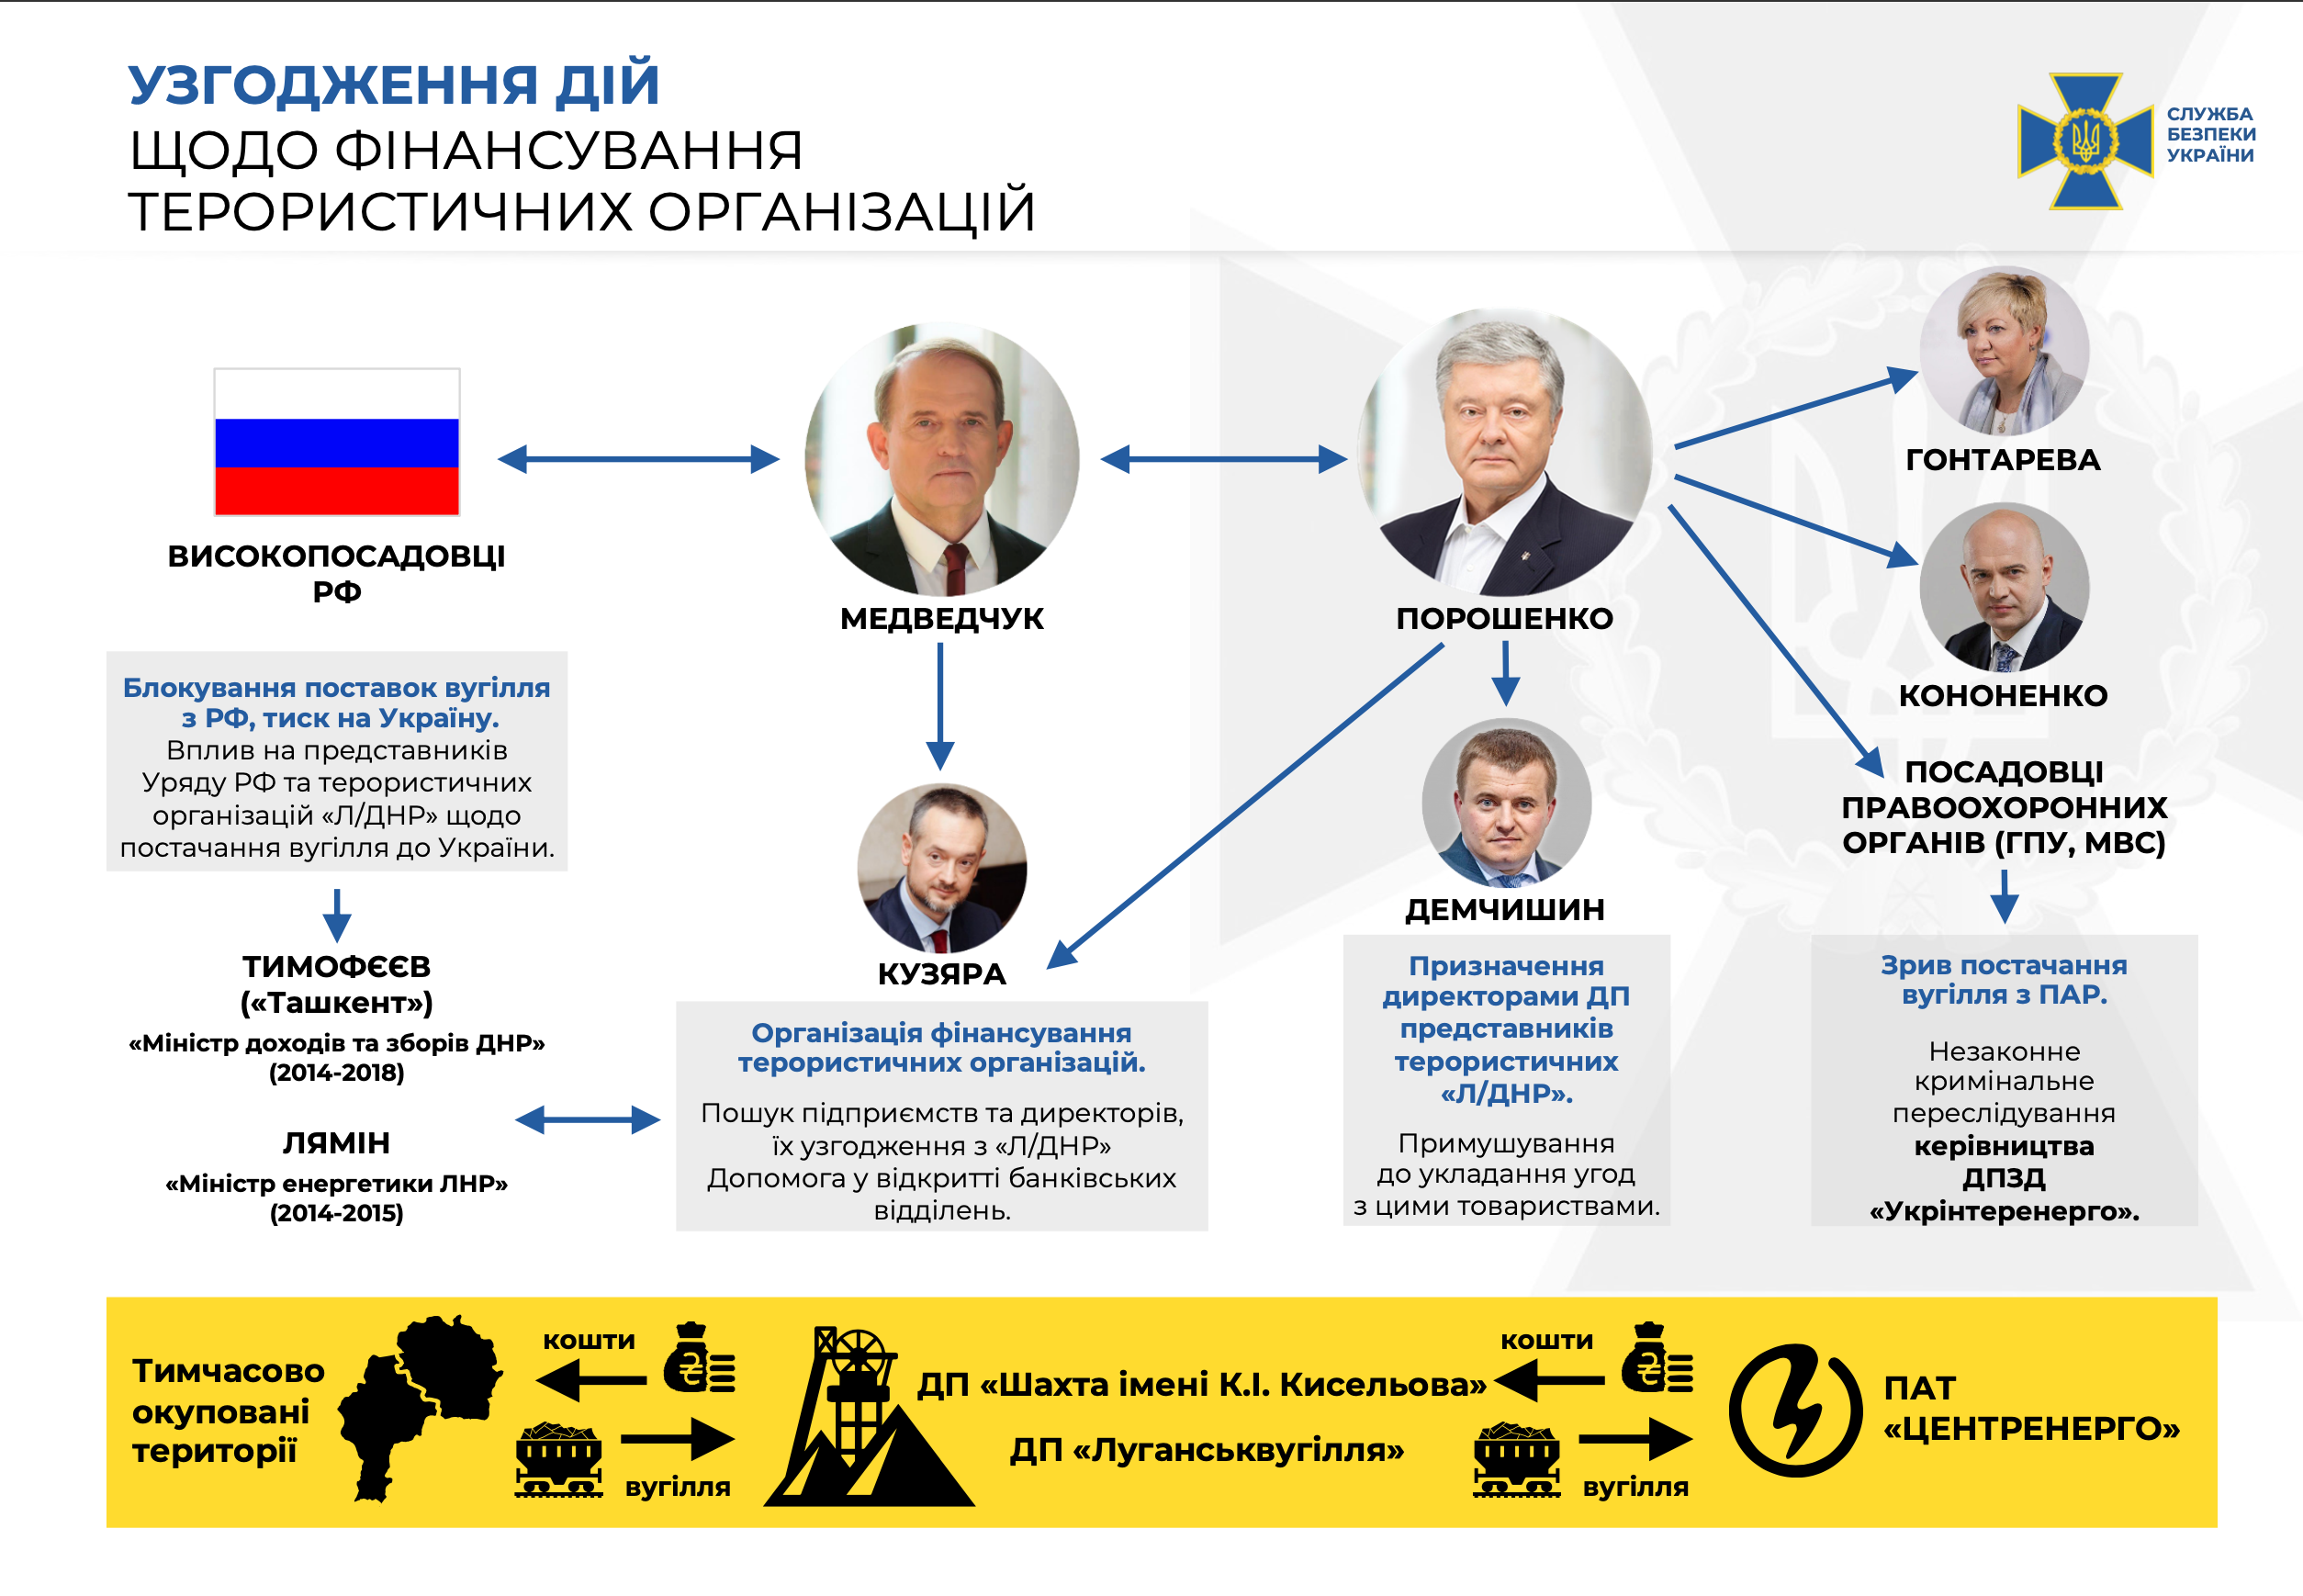 СБУ: Медведчук дал показания против Порошенко (видео) - 1 - изображение